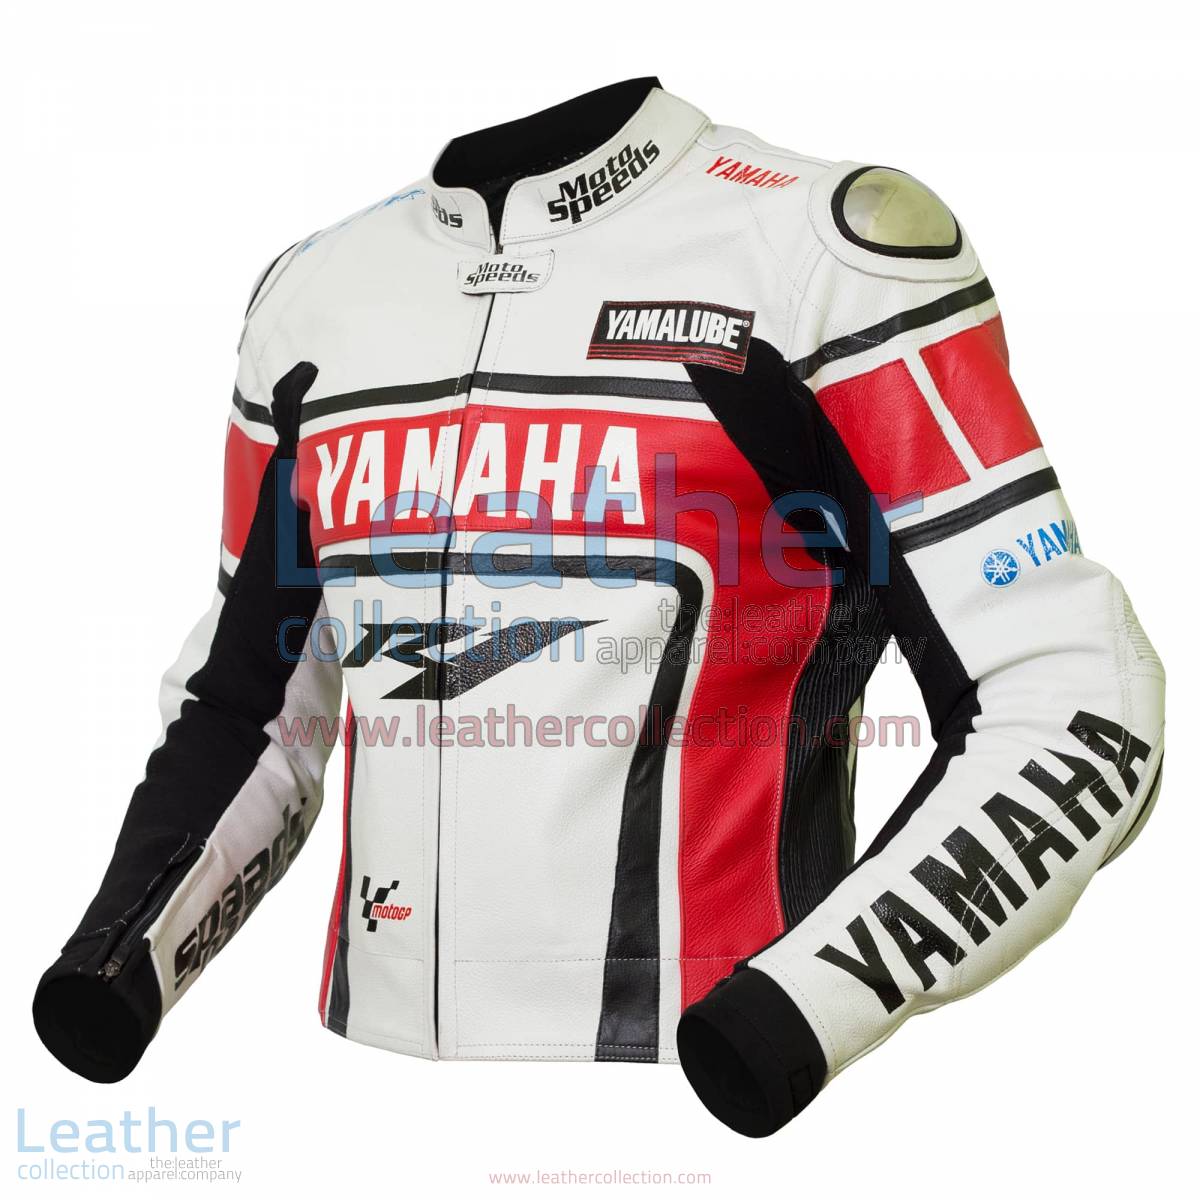 Yamaha R1 Leather Jacket | yamaha r1 leather jacket